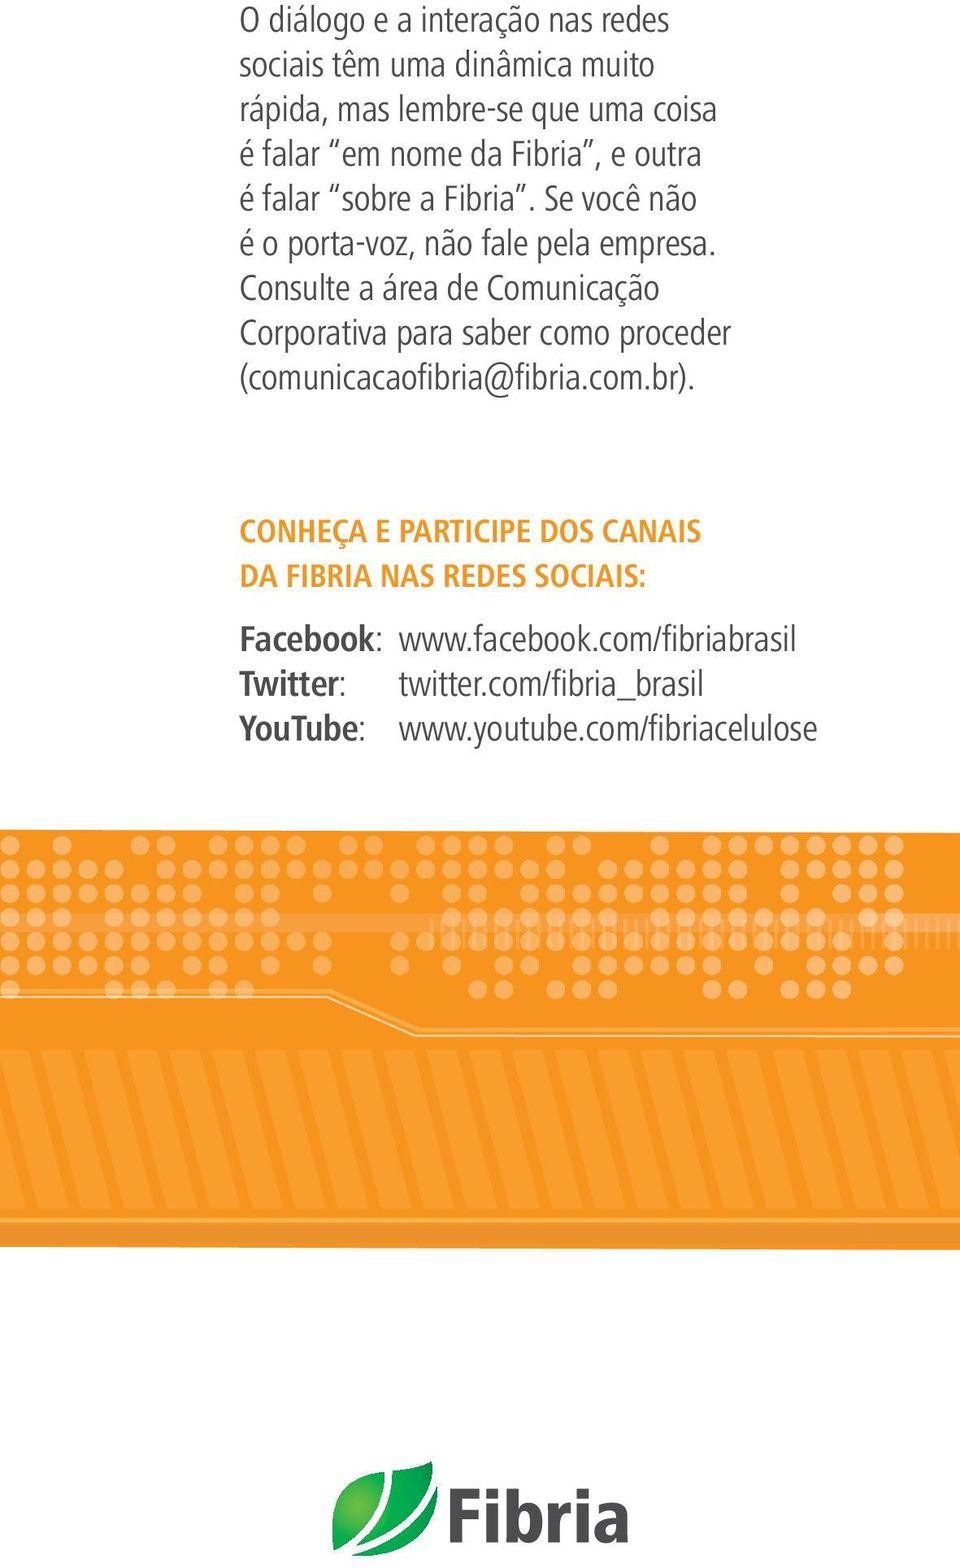 Consulte a área de Comunicação Corporativa para saber como proceder (comunicacaofibria@fibria.com.br).